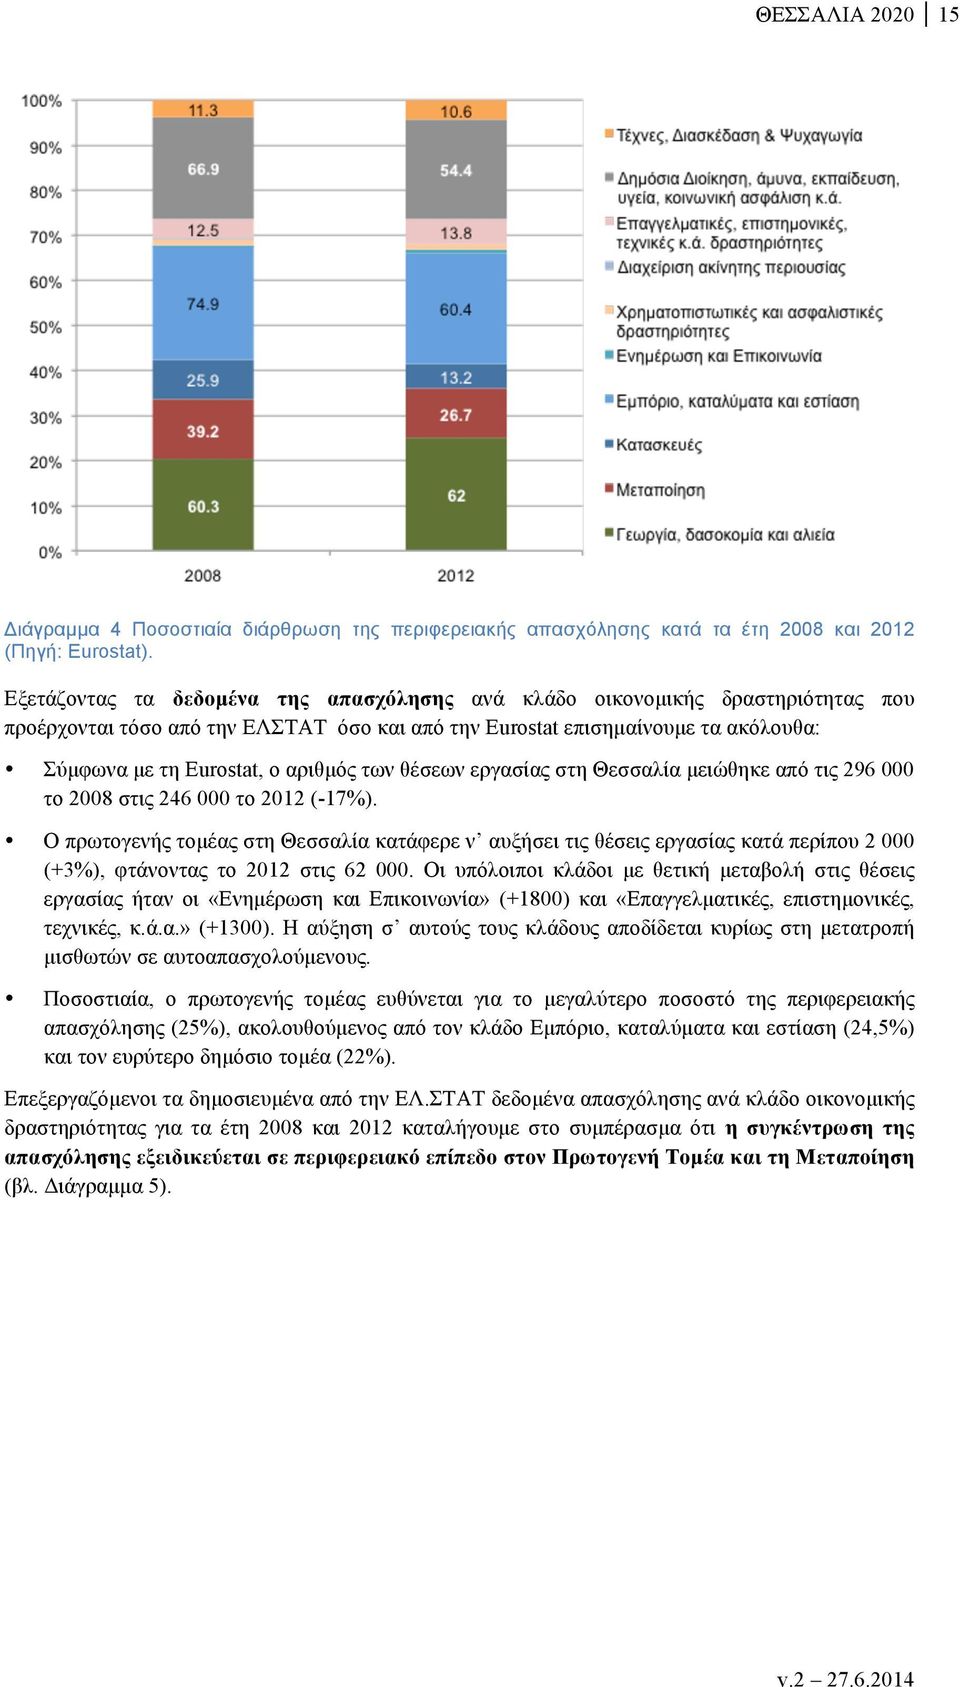 των θέσεων εργασίας στη Θεσσαλία µειώθηκε από τις 296 000 το 2008 στις 246 000 το 2012 (-17%).